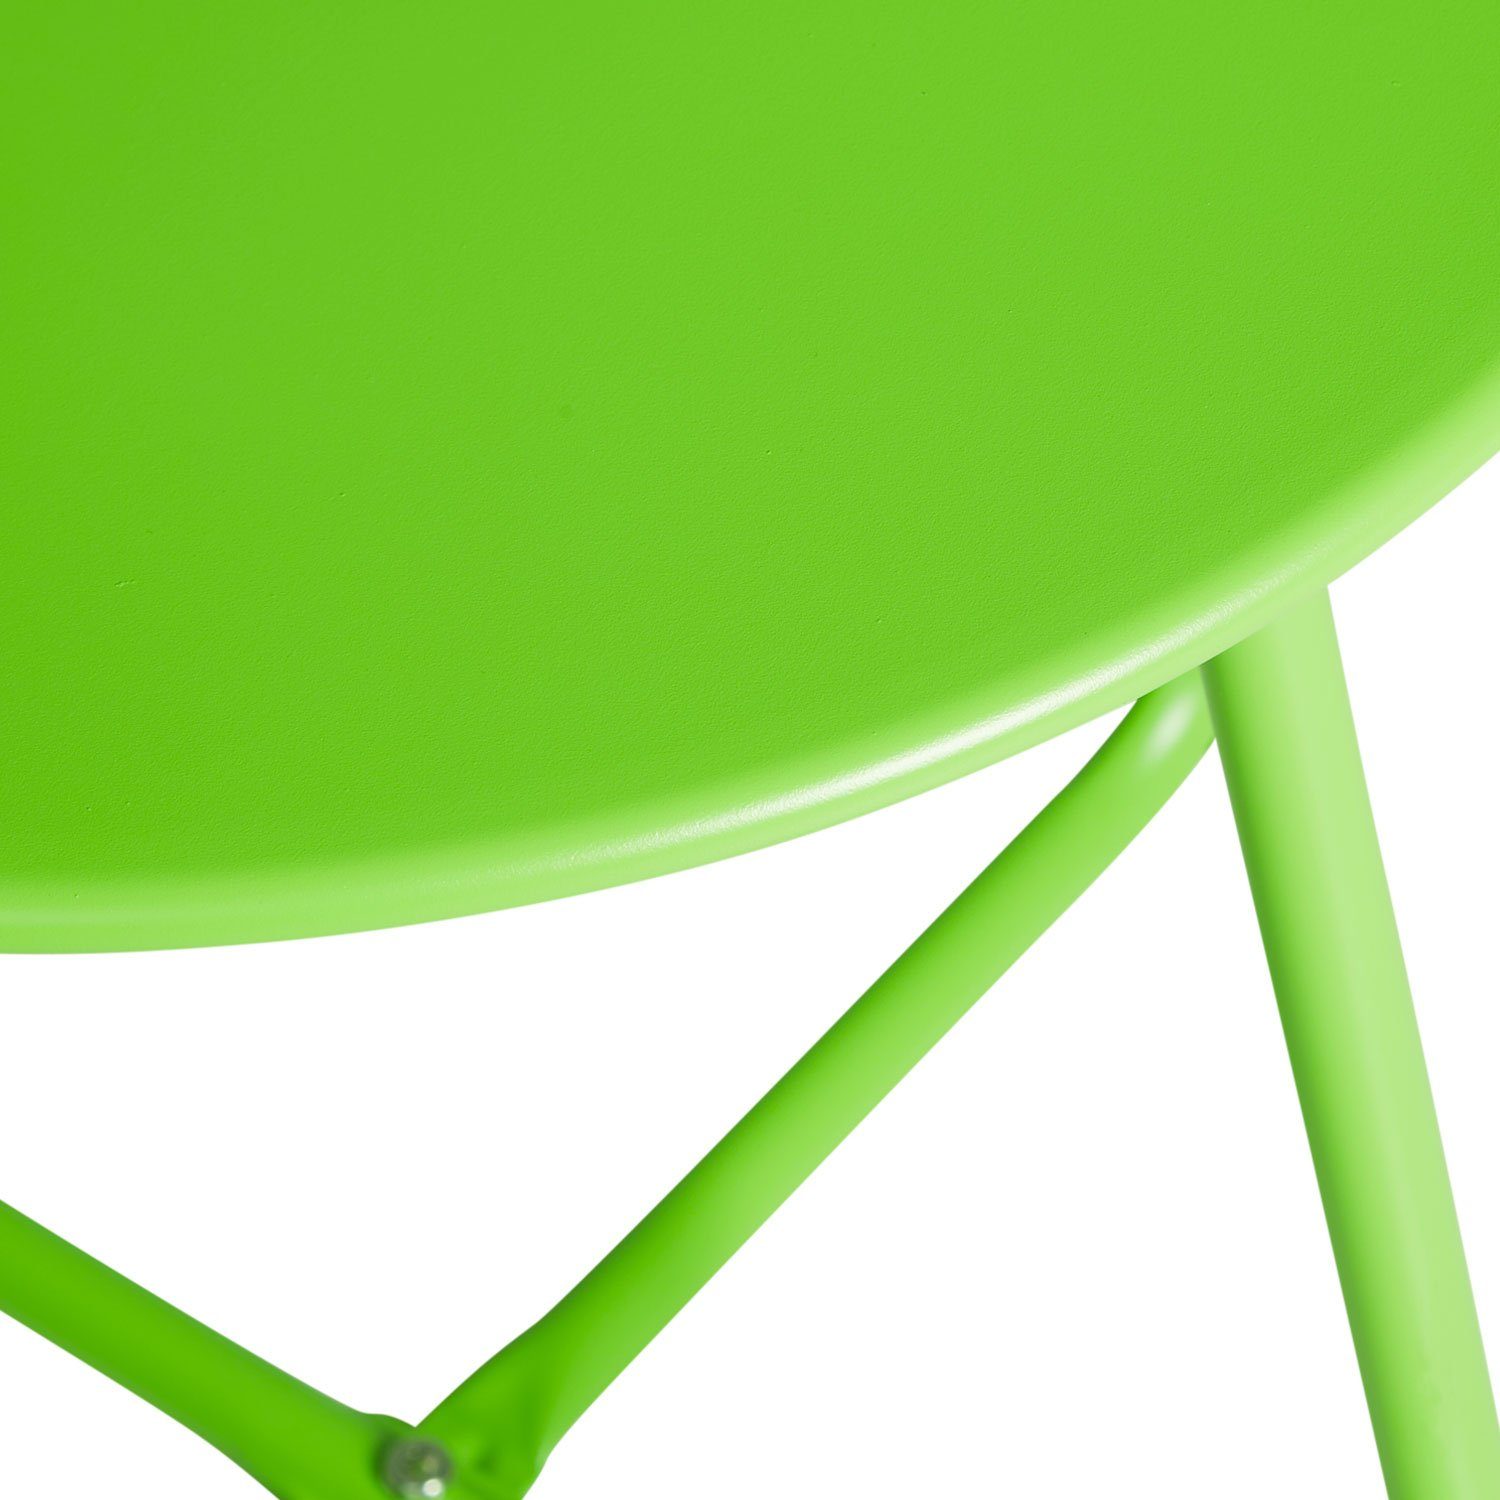 Metall Tisch grün | grün Kaffeetisch Beistelltisch (kein Set) Rund Gartentisch Homestyle4u | grün